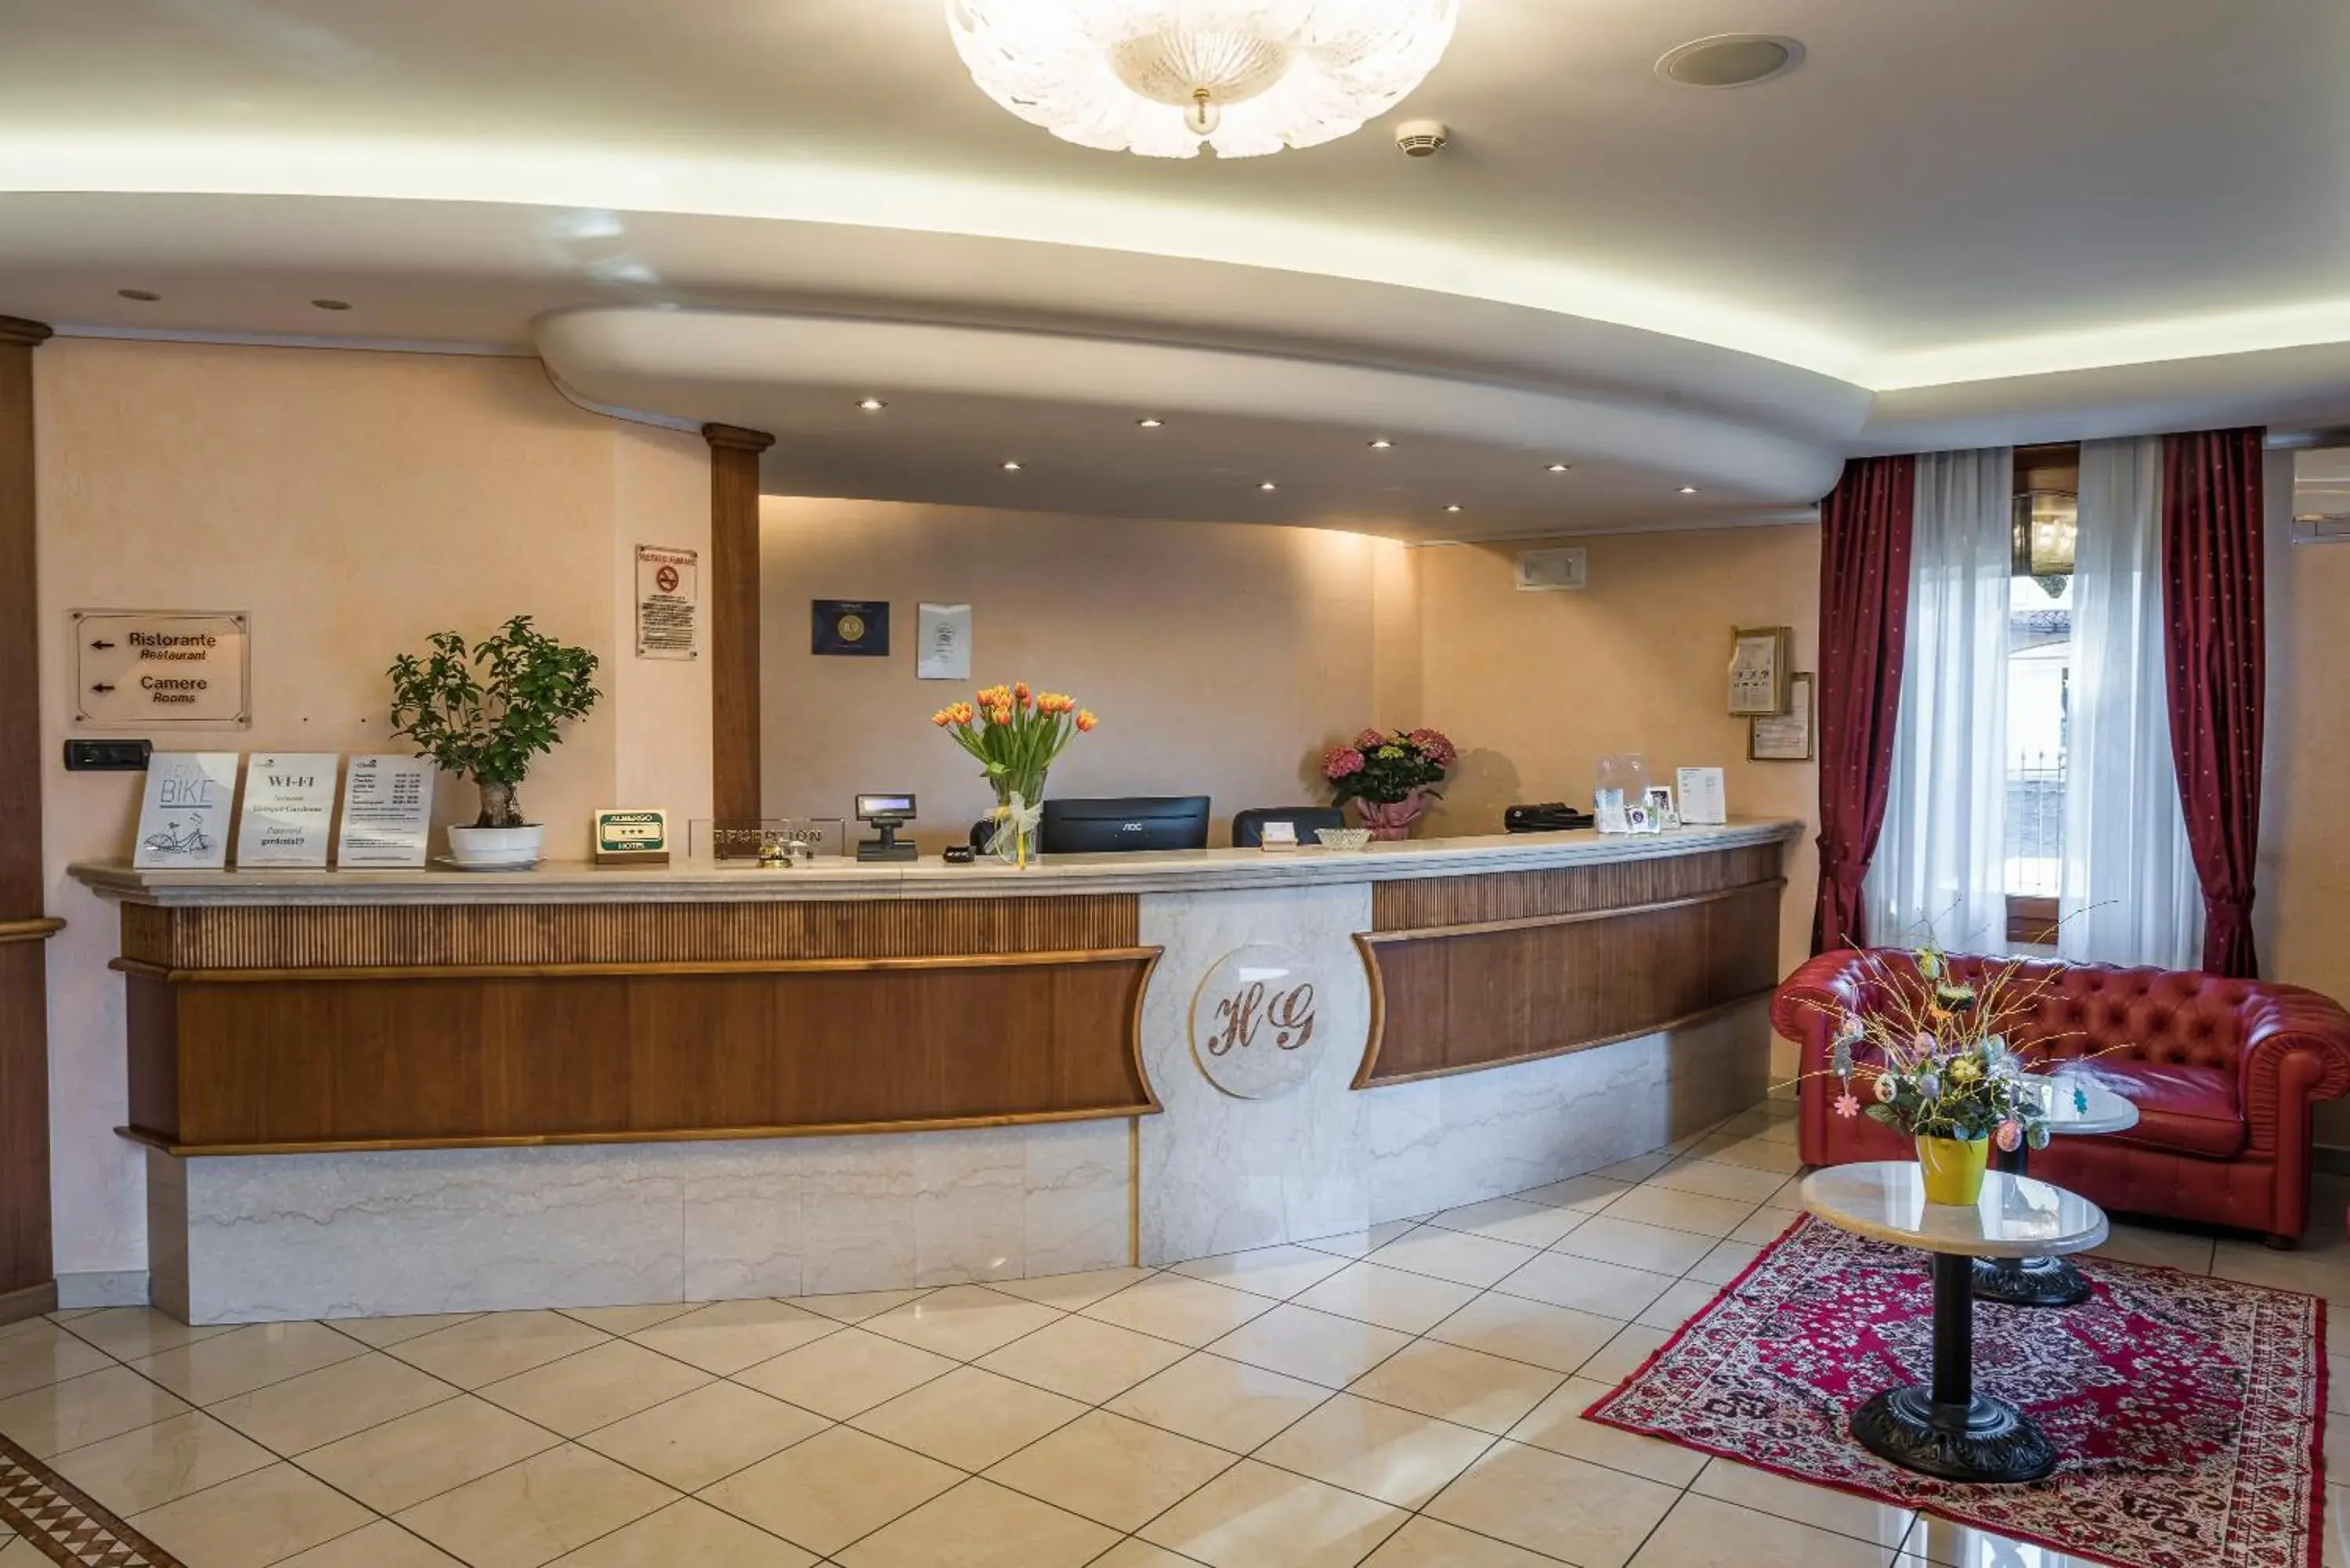 Lobby or reception, Lobby/Reception in Hotel Gardenia